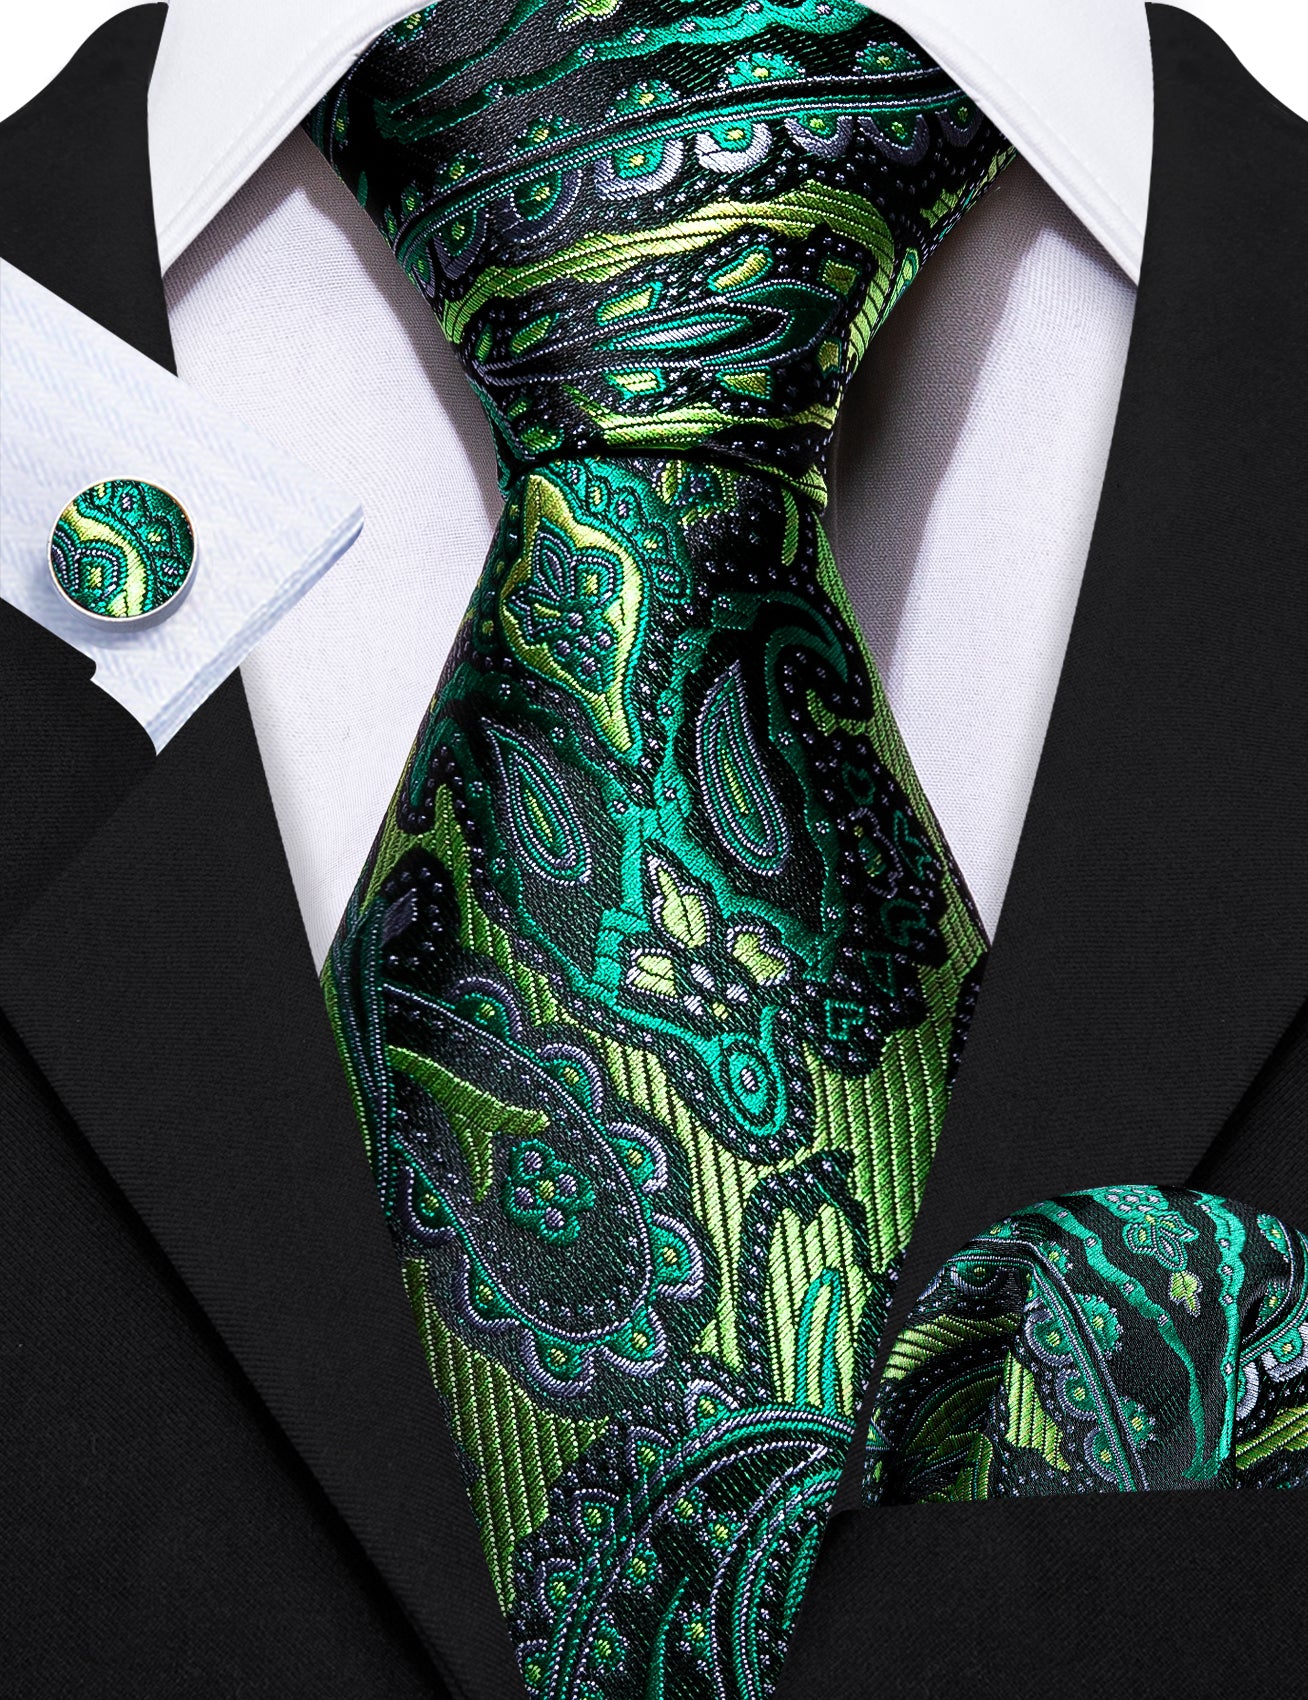 Barry Wang Green Tie Paisley Silk Men's Tie Handkerchief Cufflinks Set